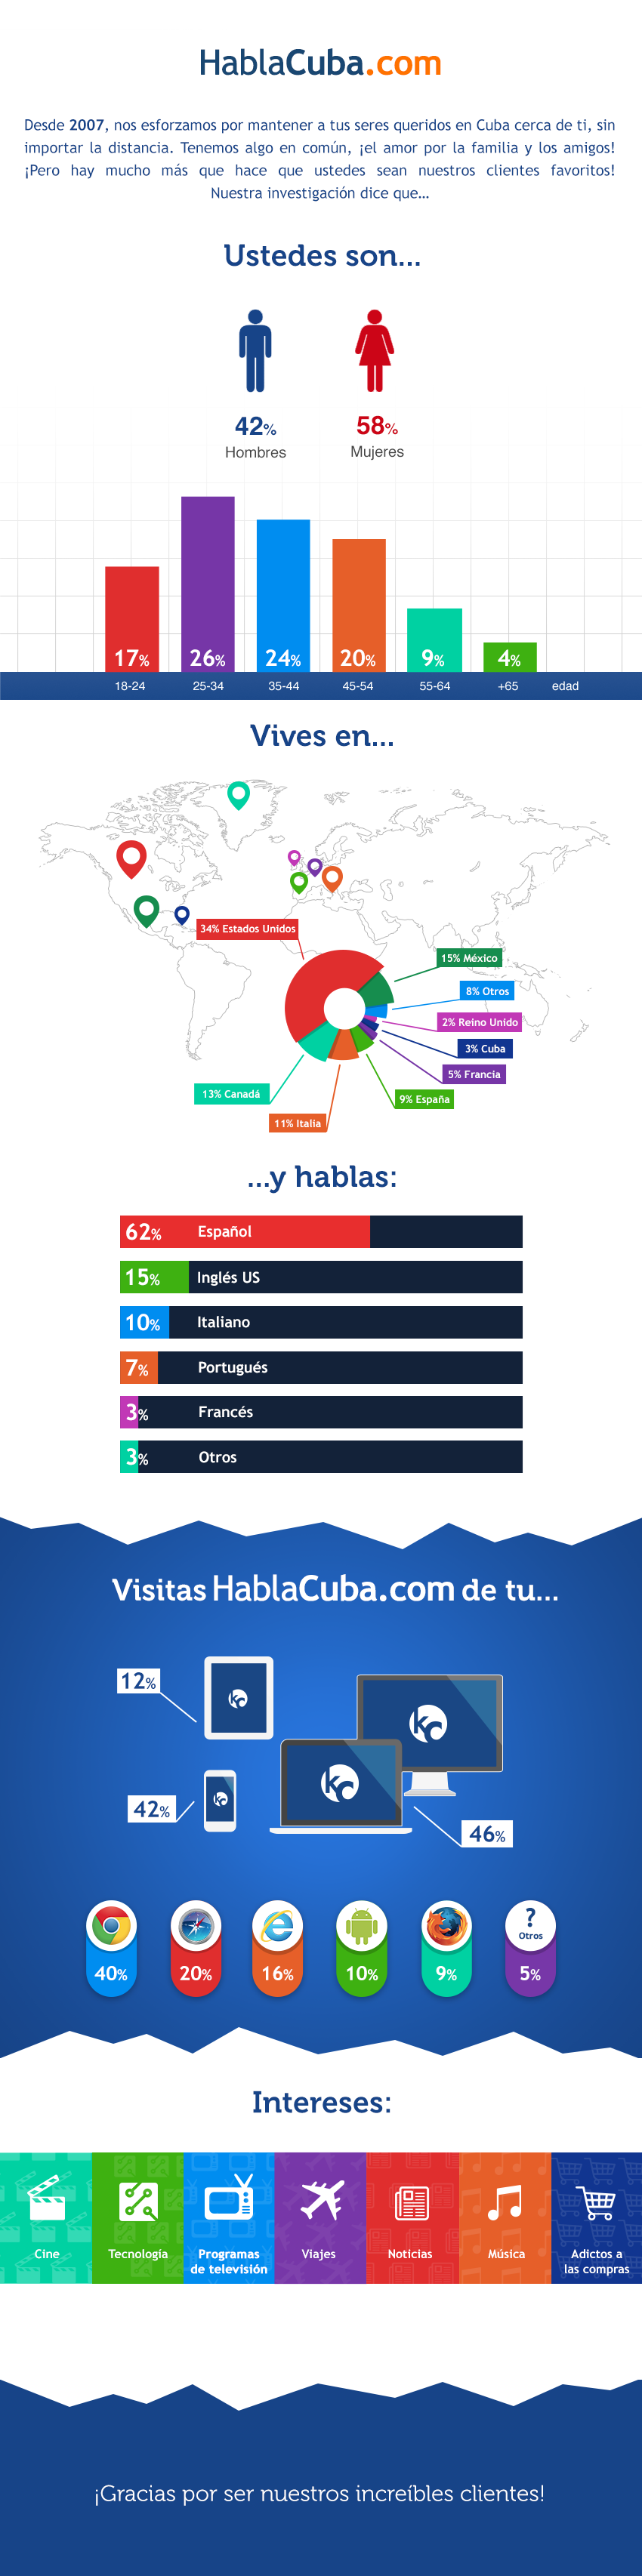 HablaCuba - SP